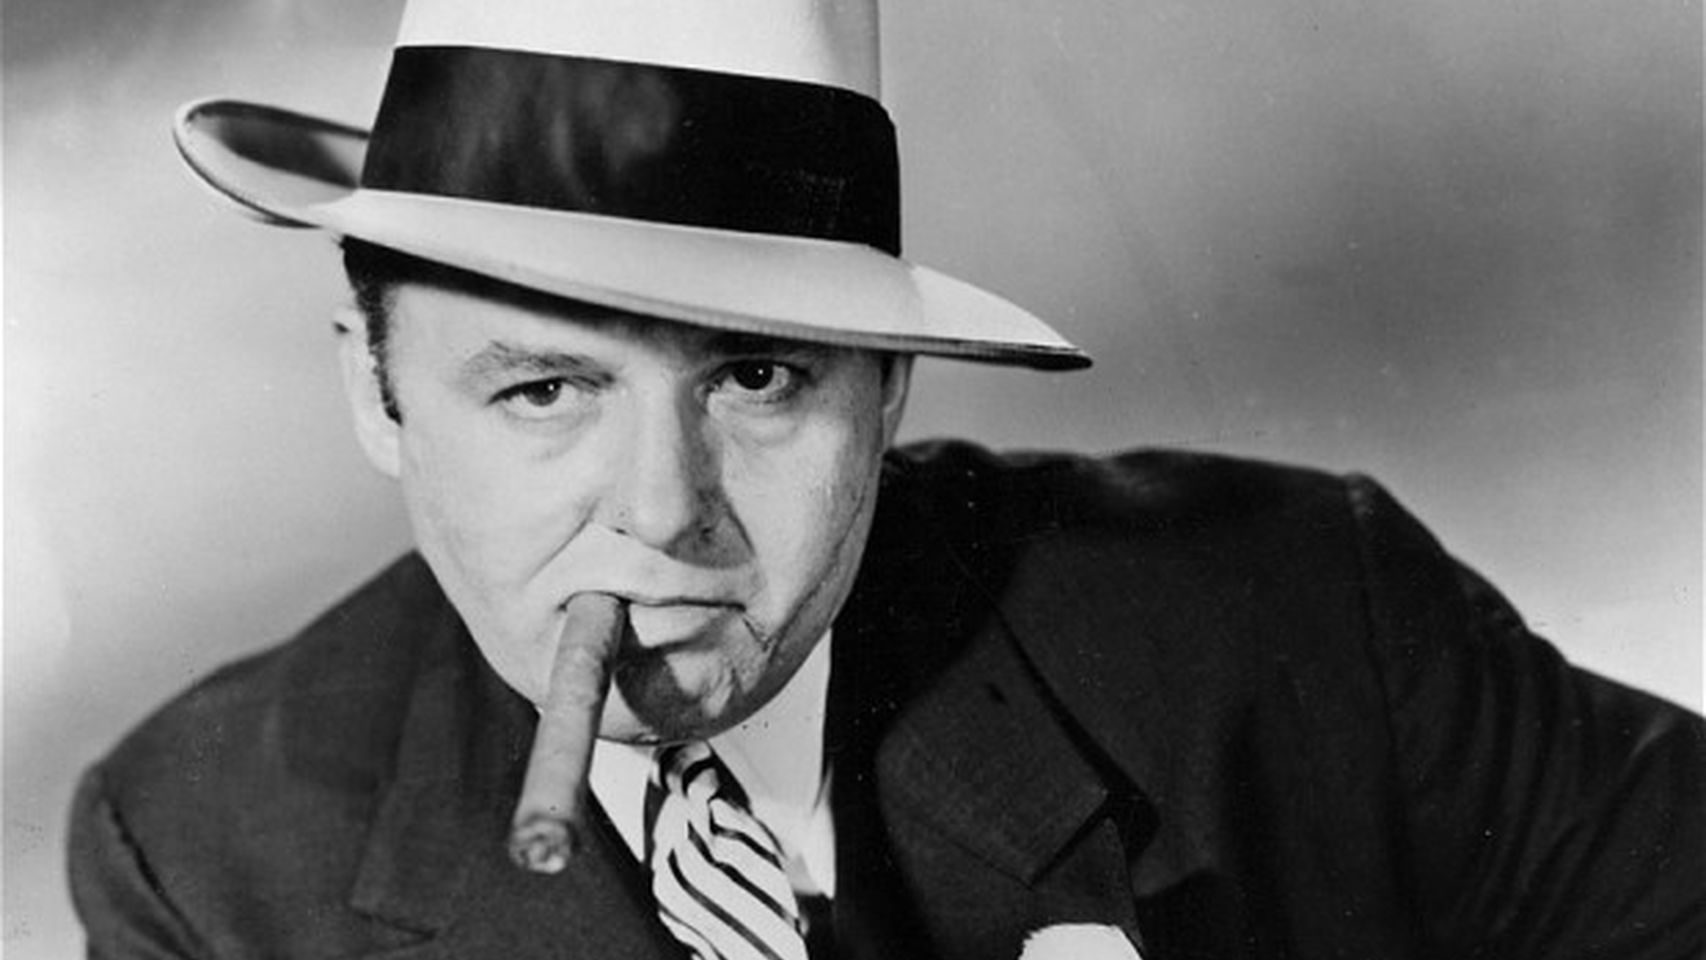 Vejam Tom Hardy como Al Capone em “Fonzo”, o novo filme de Josh Trank